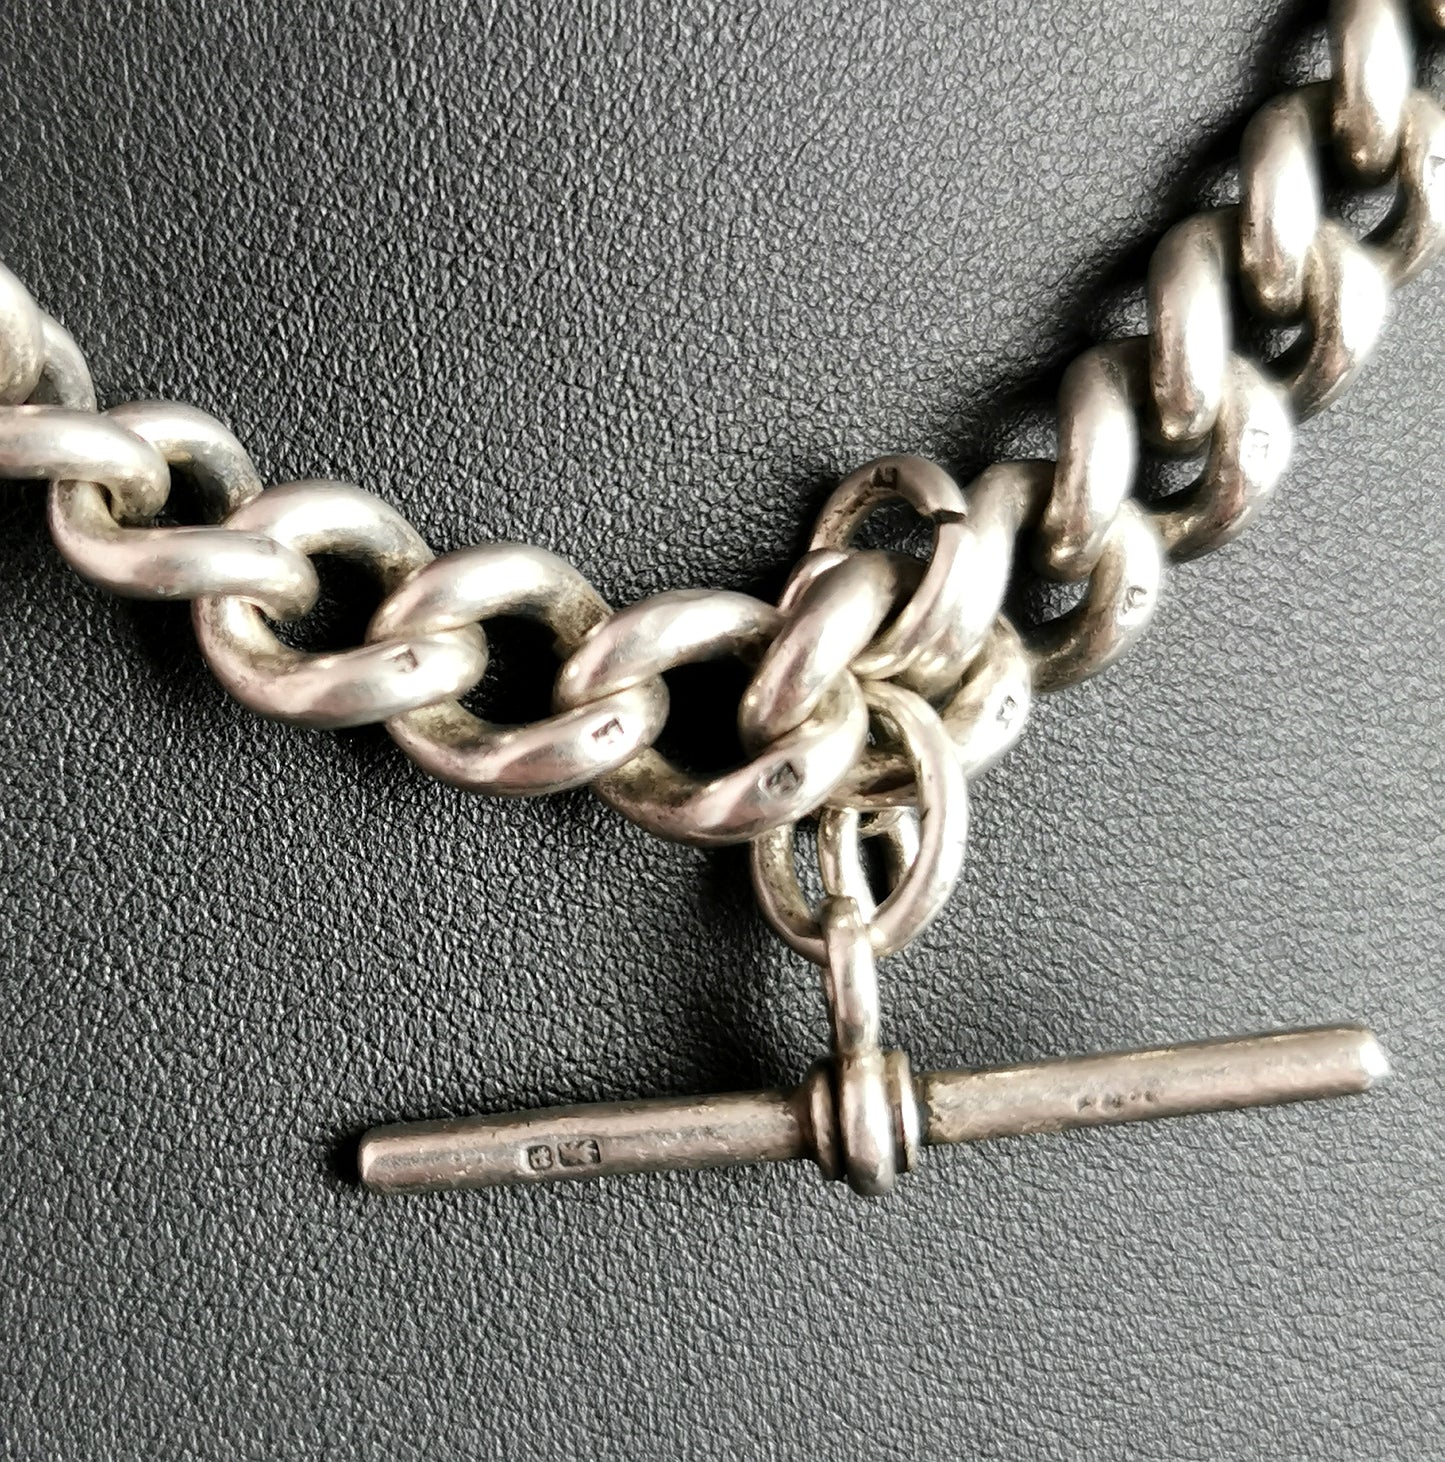 Antique Victorian silver Albert chain, watch chain